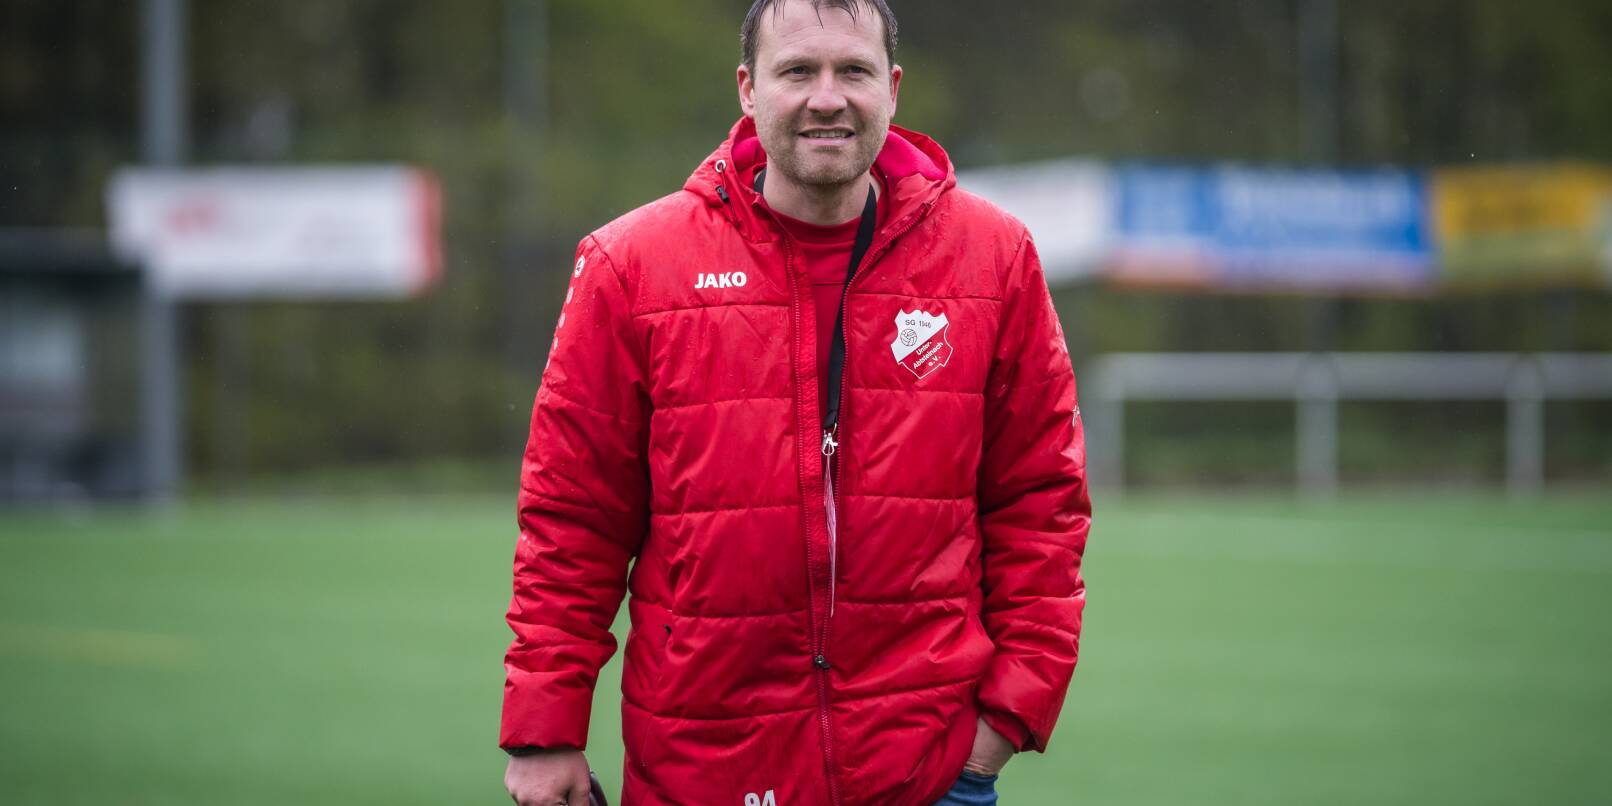 Nass, aber am Ende zufrieden: Trainer Marcus Lauer gewann mit der SG Unter-Abtsteinach das Spitzenspiel gegen Eintracht Bürstadt mit 5:1.